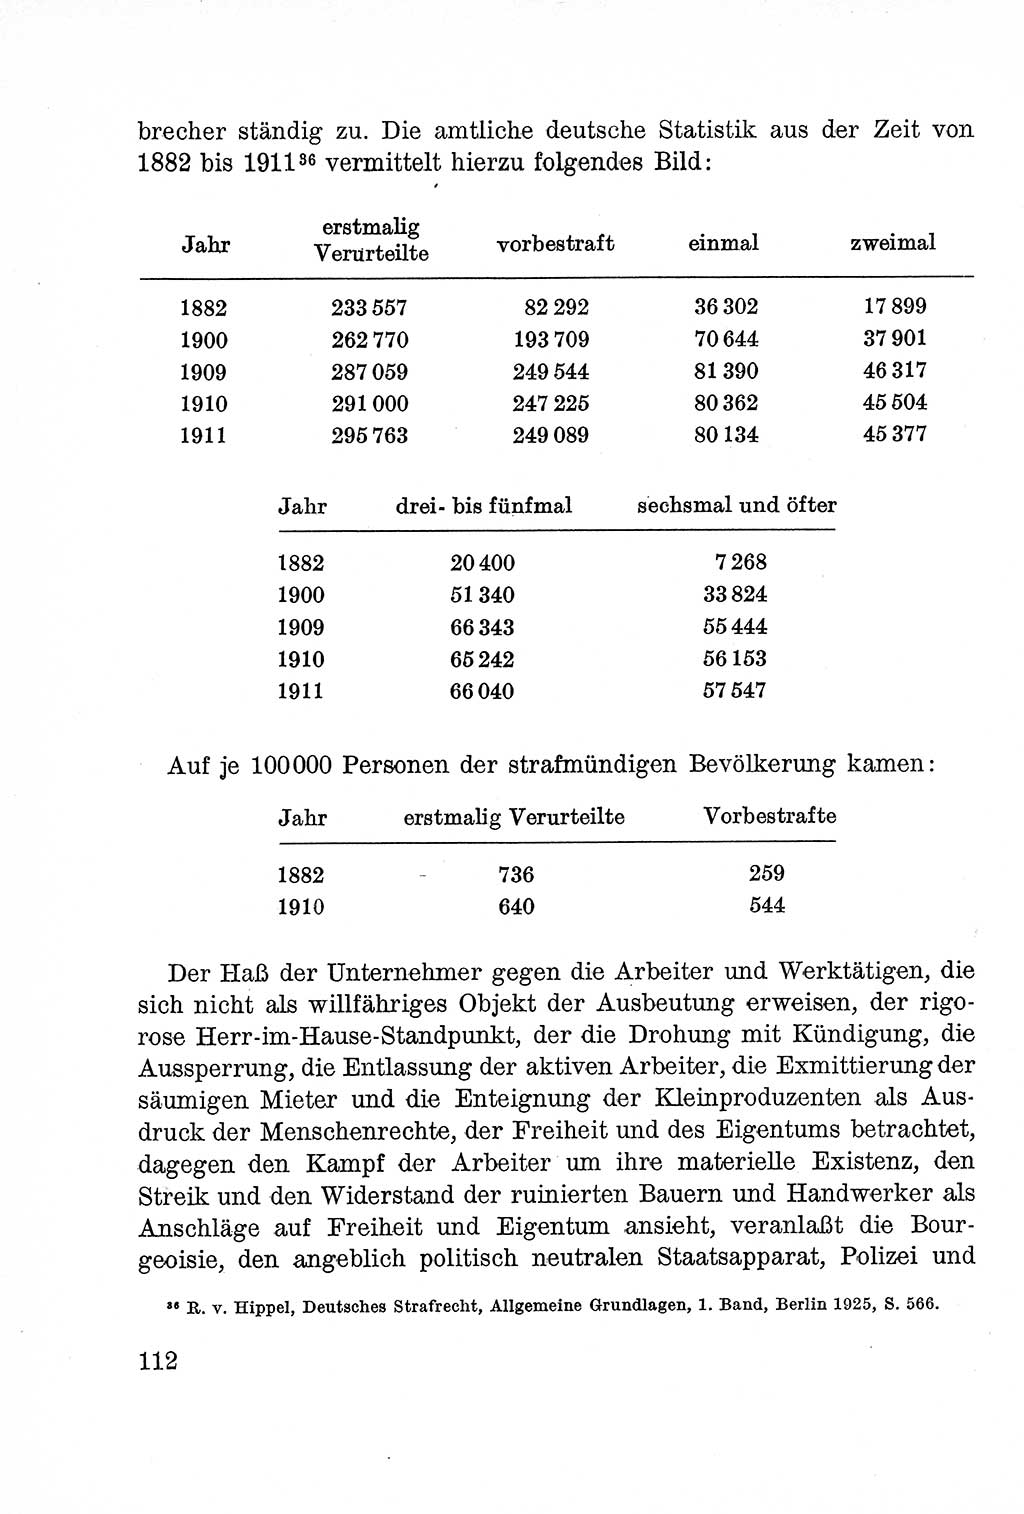 Lehrbuch des Strafrechts der Deutschen Demokratischen Republik (DDR), Allgemeiner Teil 1957, Seite 112 (Lb. Strafr. DDR AT 1957, S. 112)